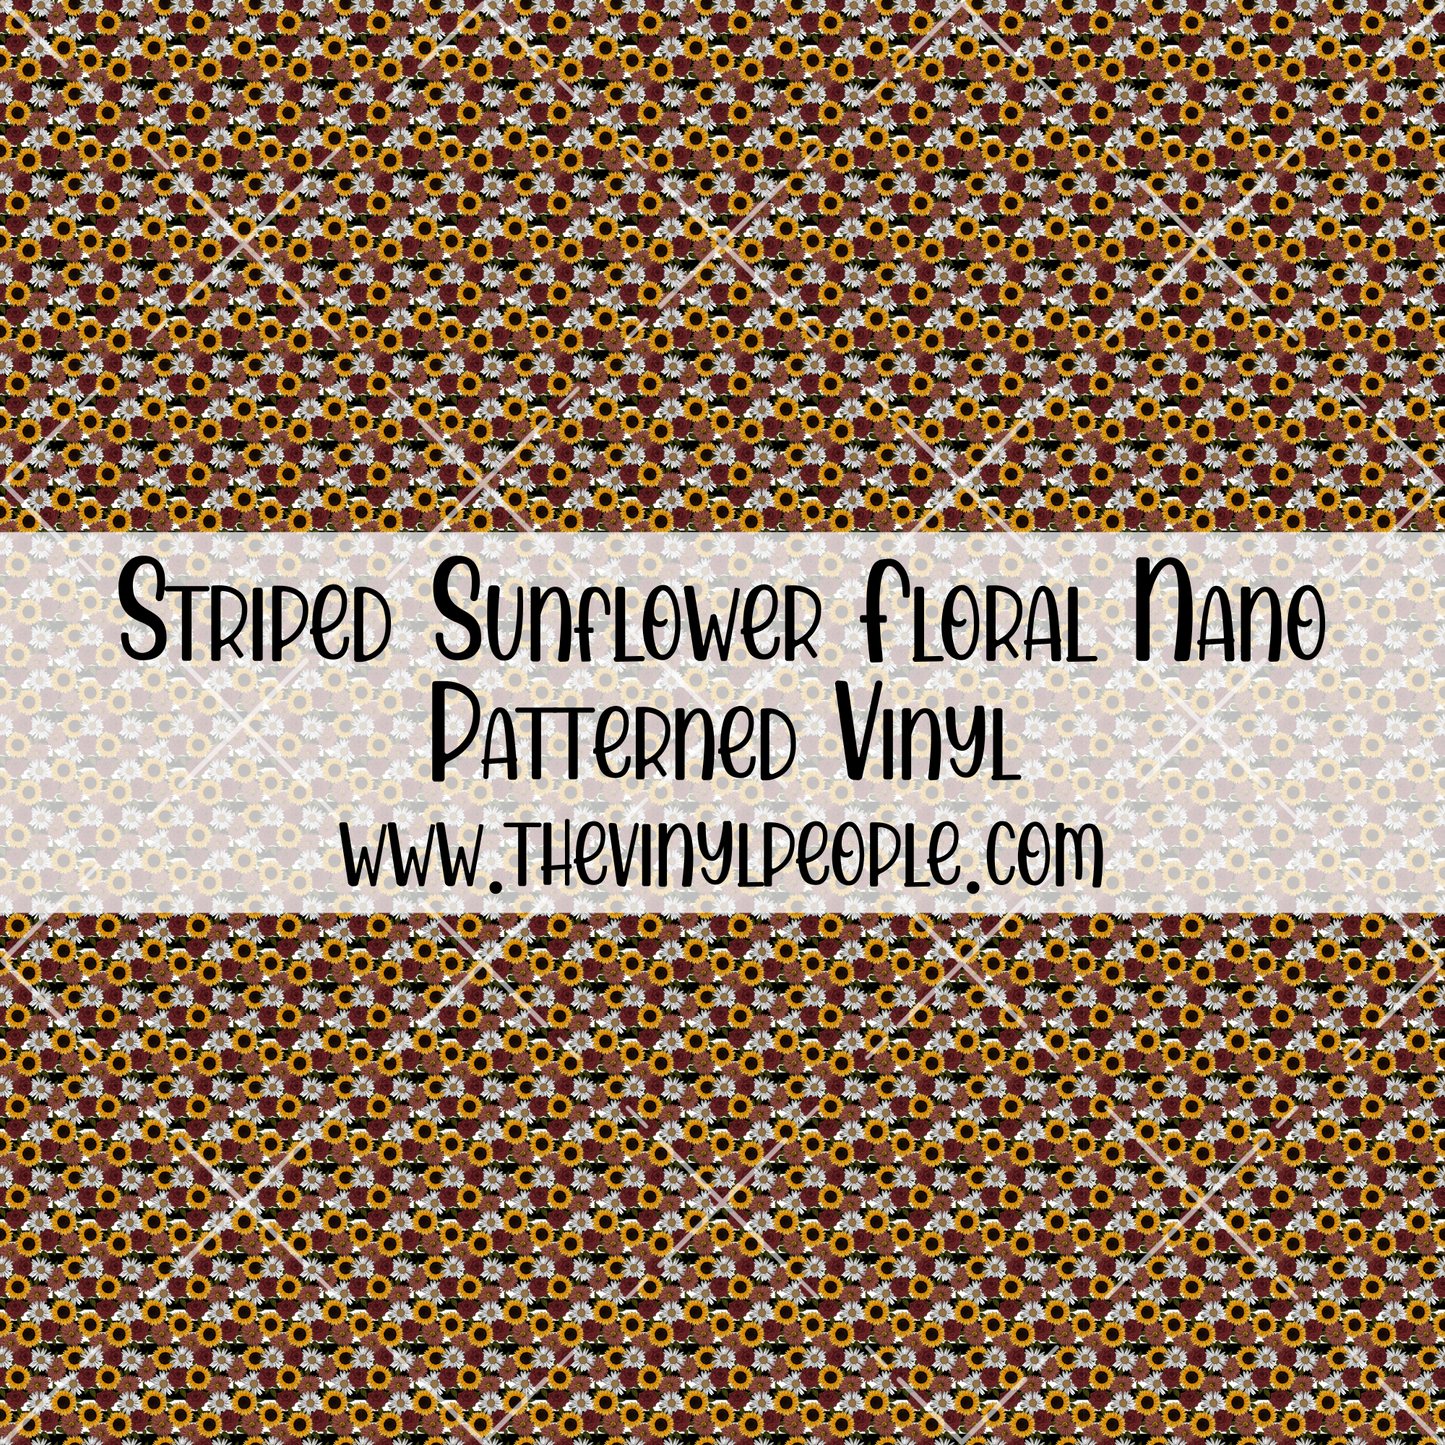 Striped Sunflower Floral Patterned Vinyl